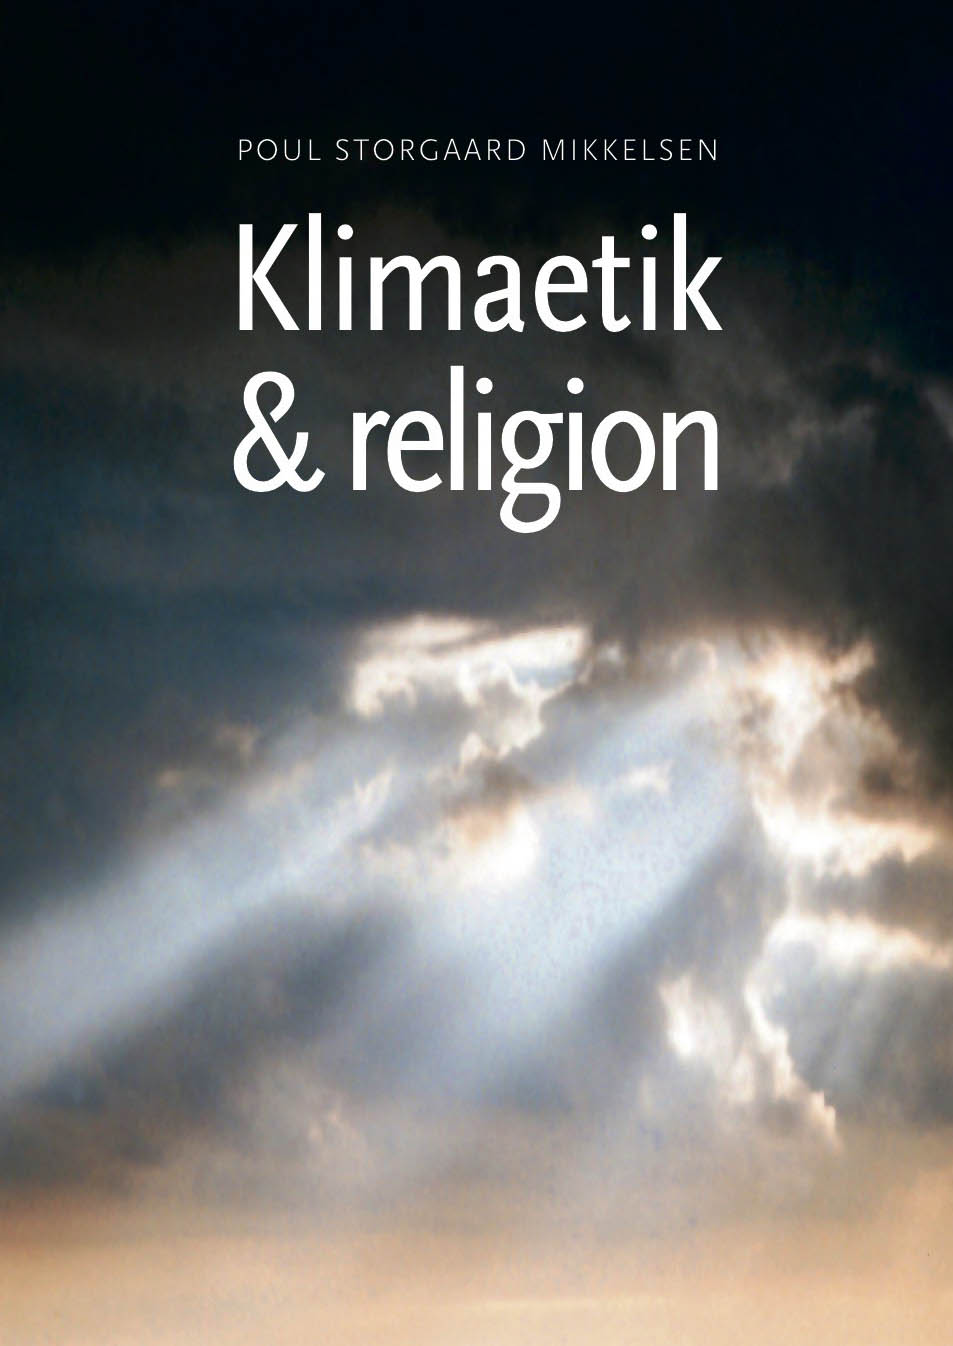 Klimaetik og religion